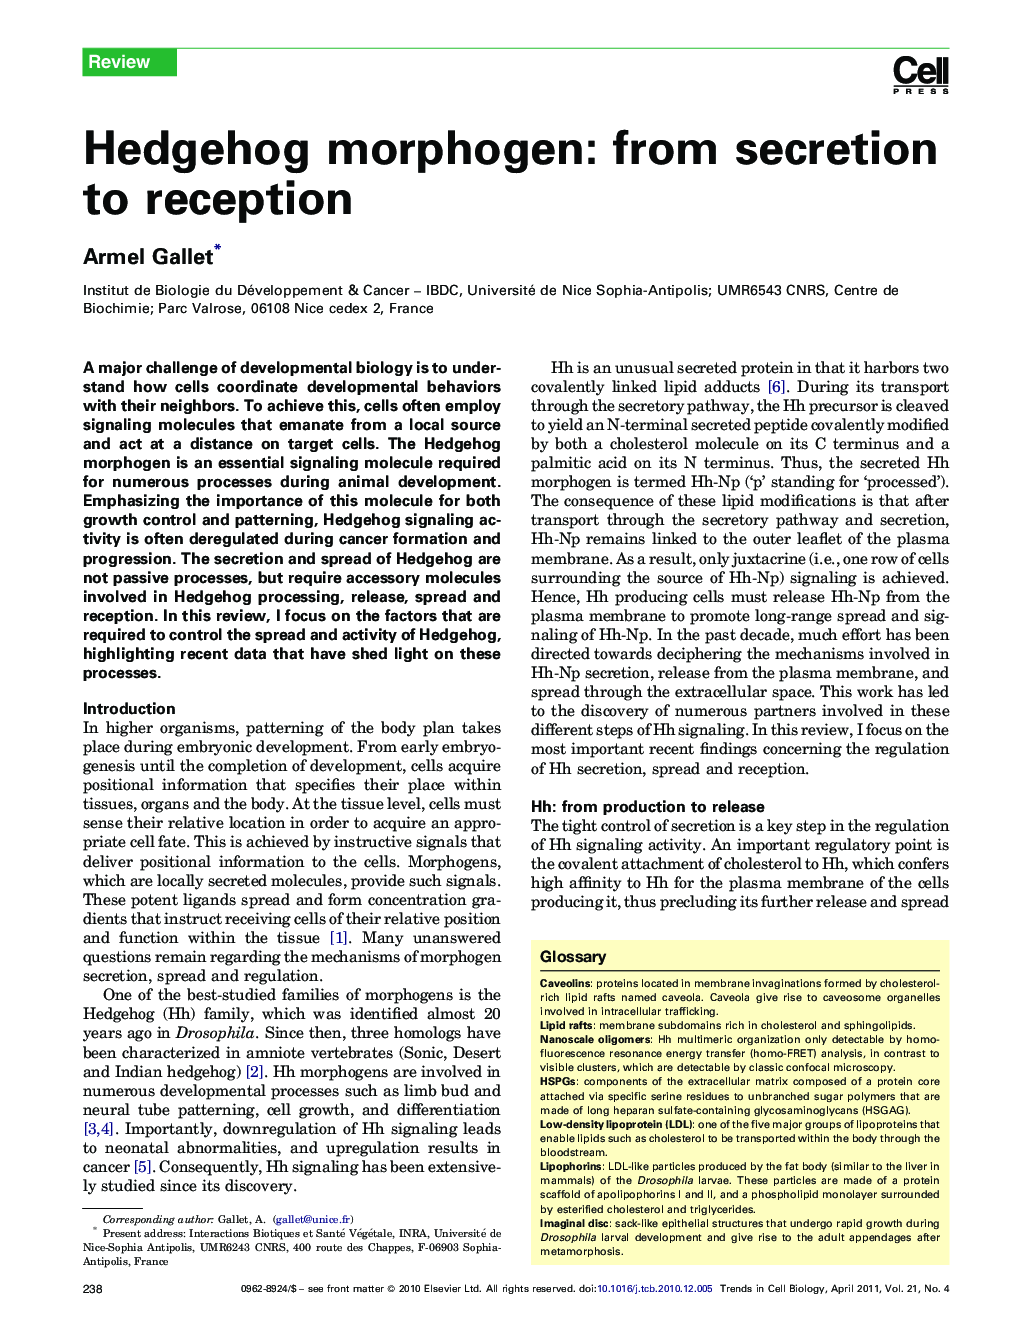 Hedgehog morphogen: from secretion to reception